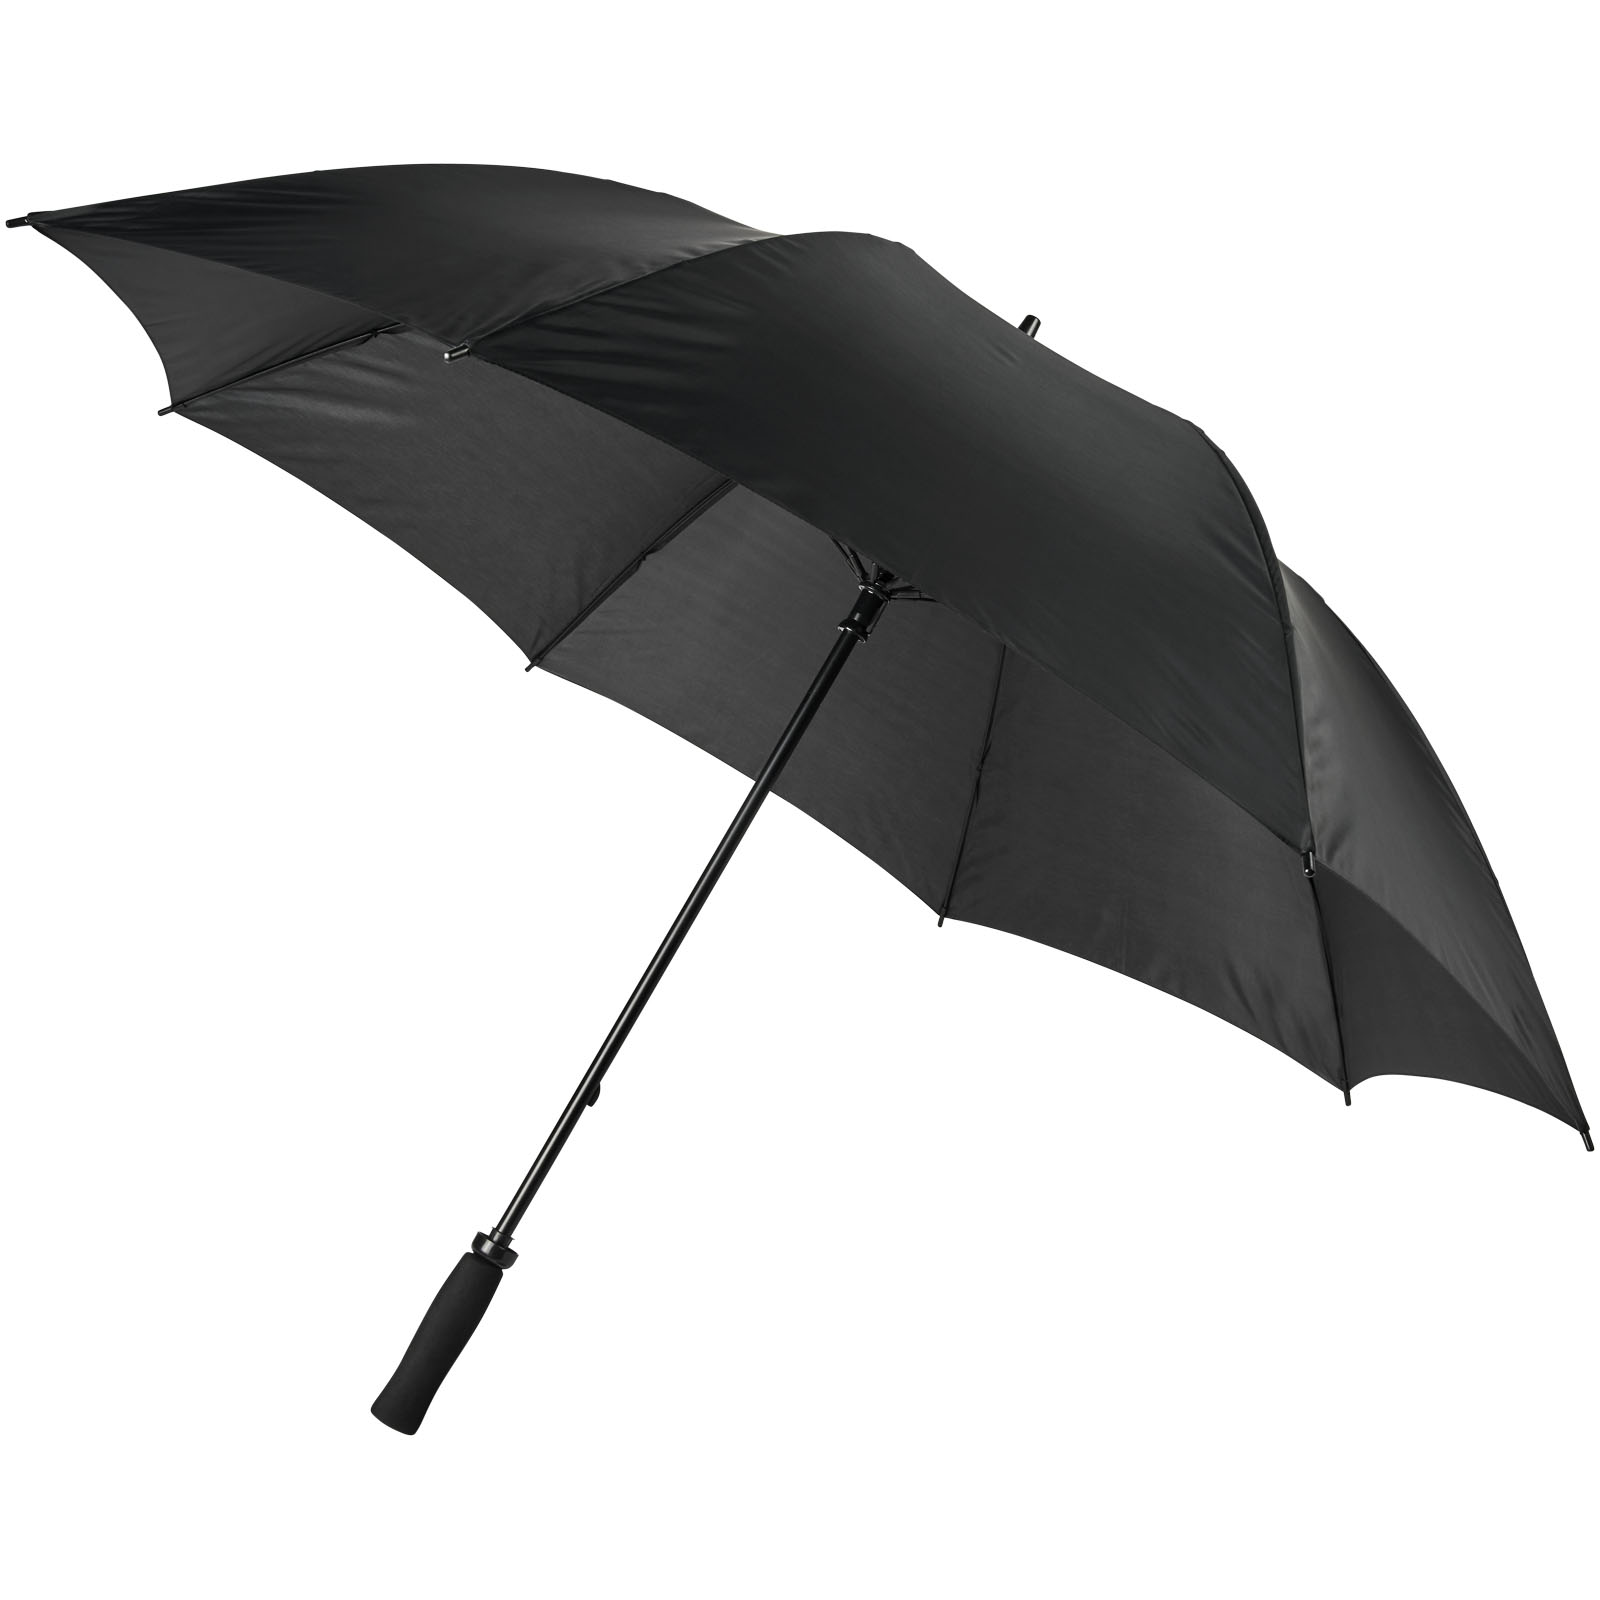 Parapluie de golf pour deux personnes - Niort-de-Sault - Zaprinta France